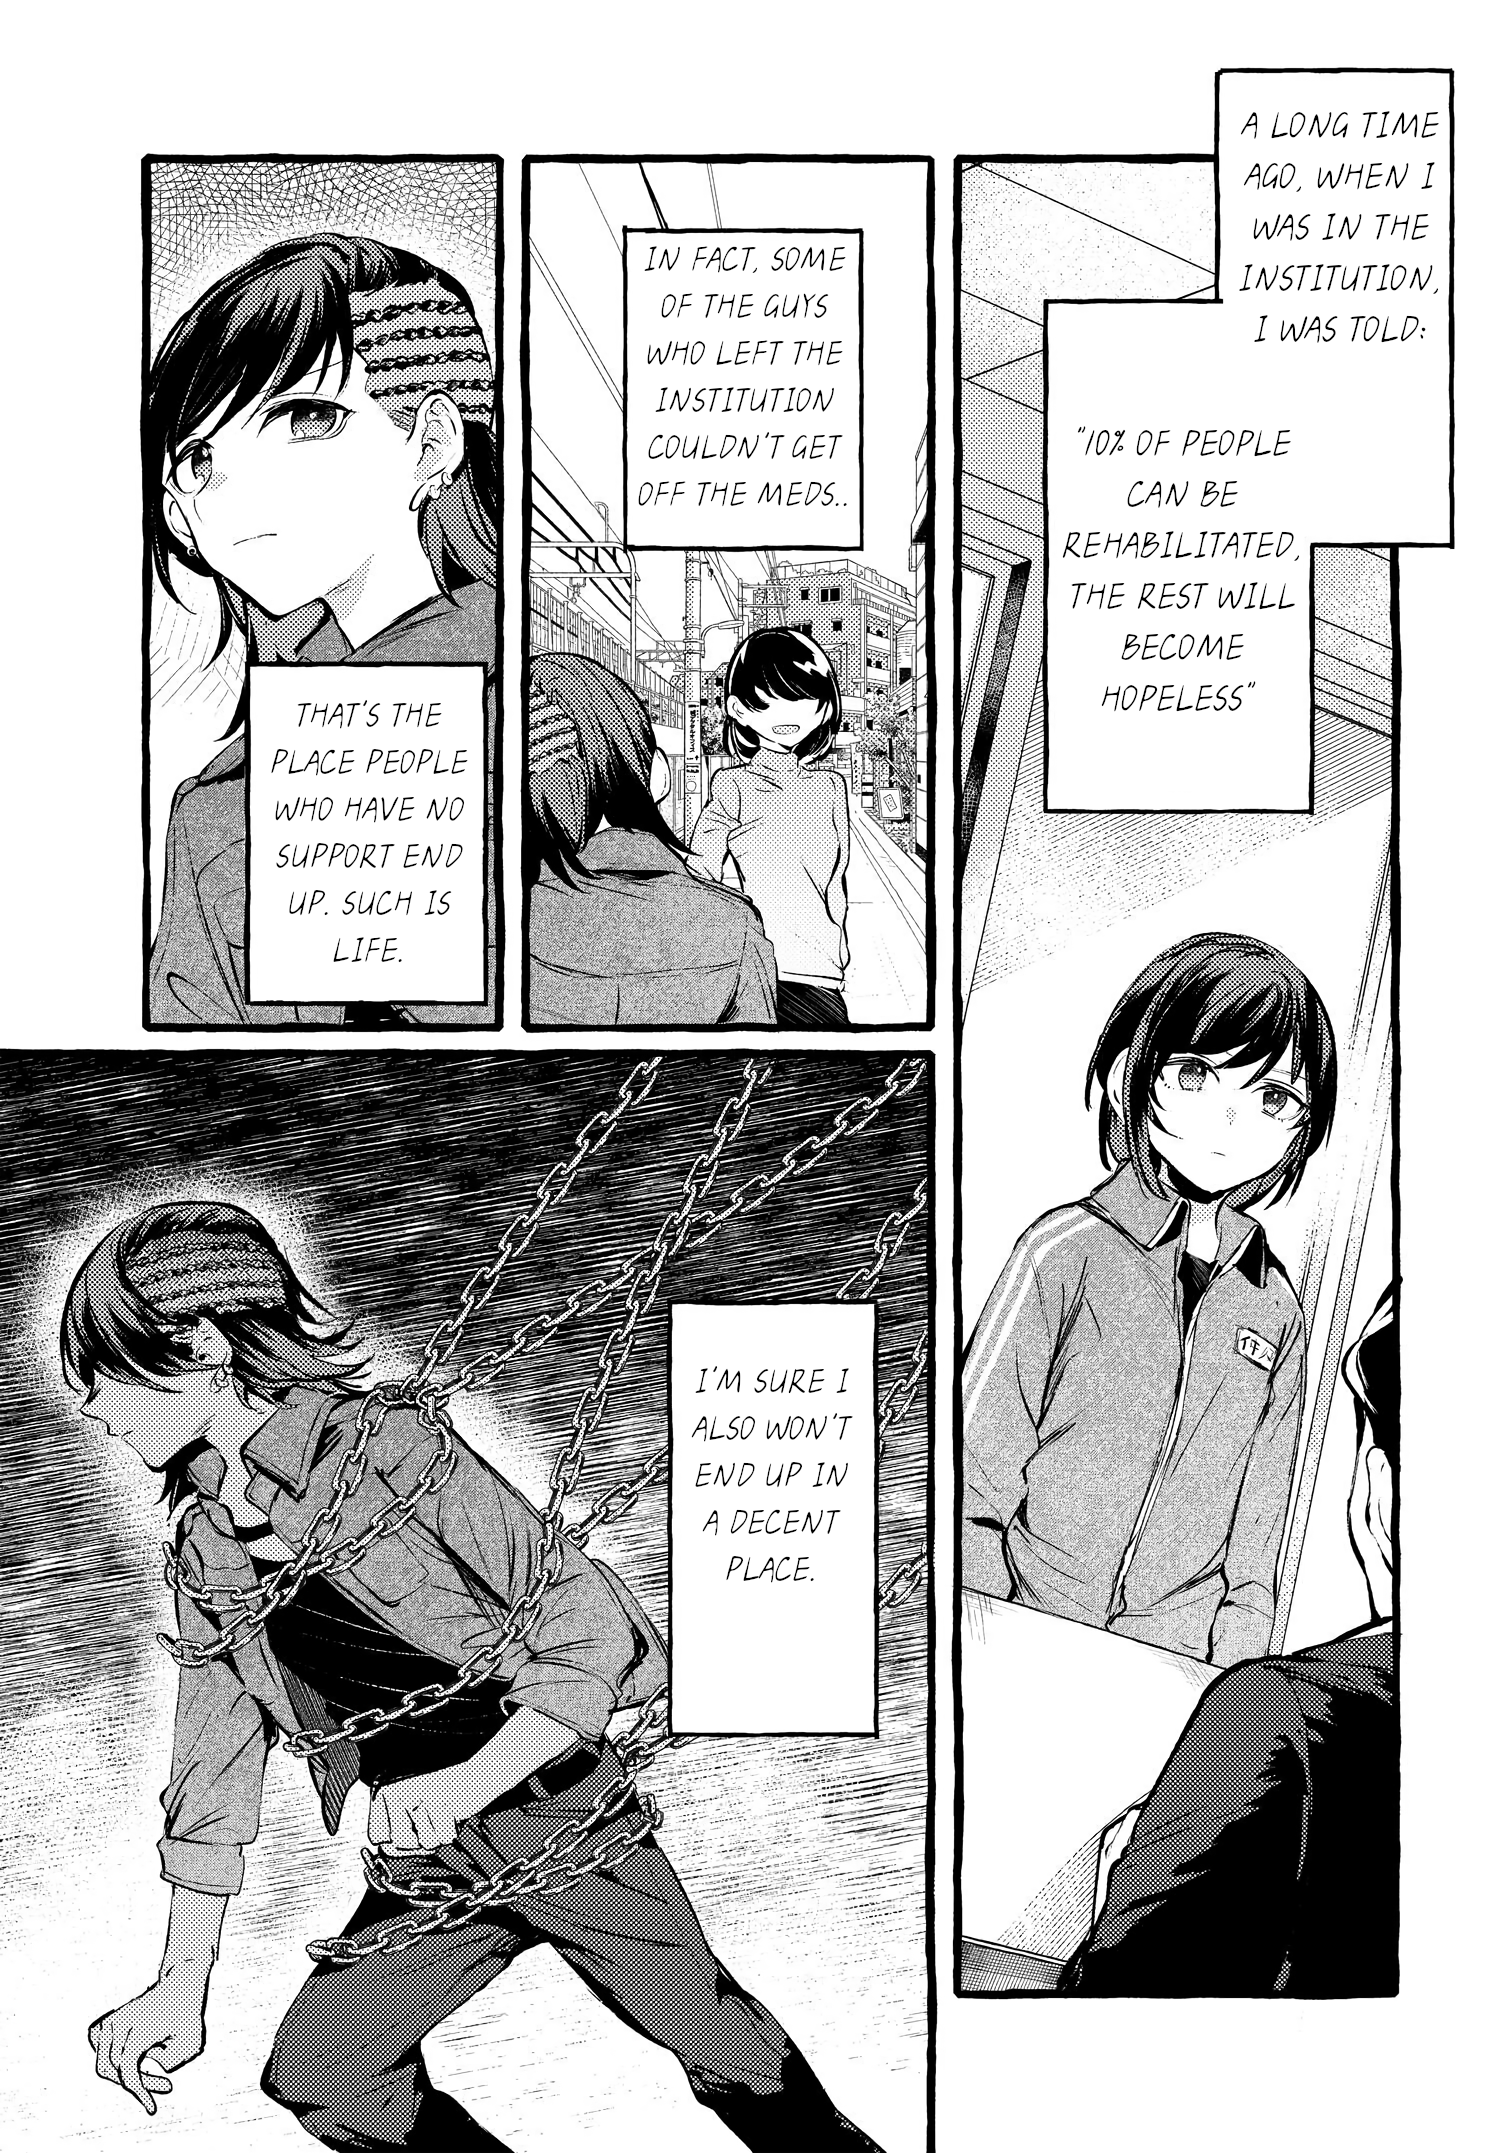 Fuzoroi No Renri - Side Stories - Page 1